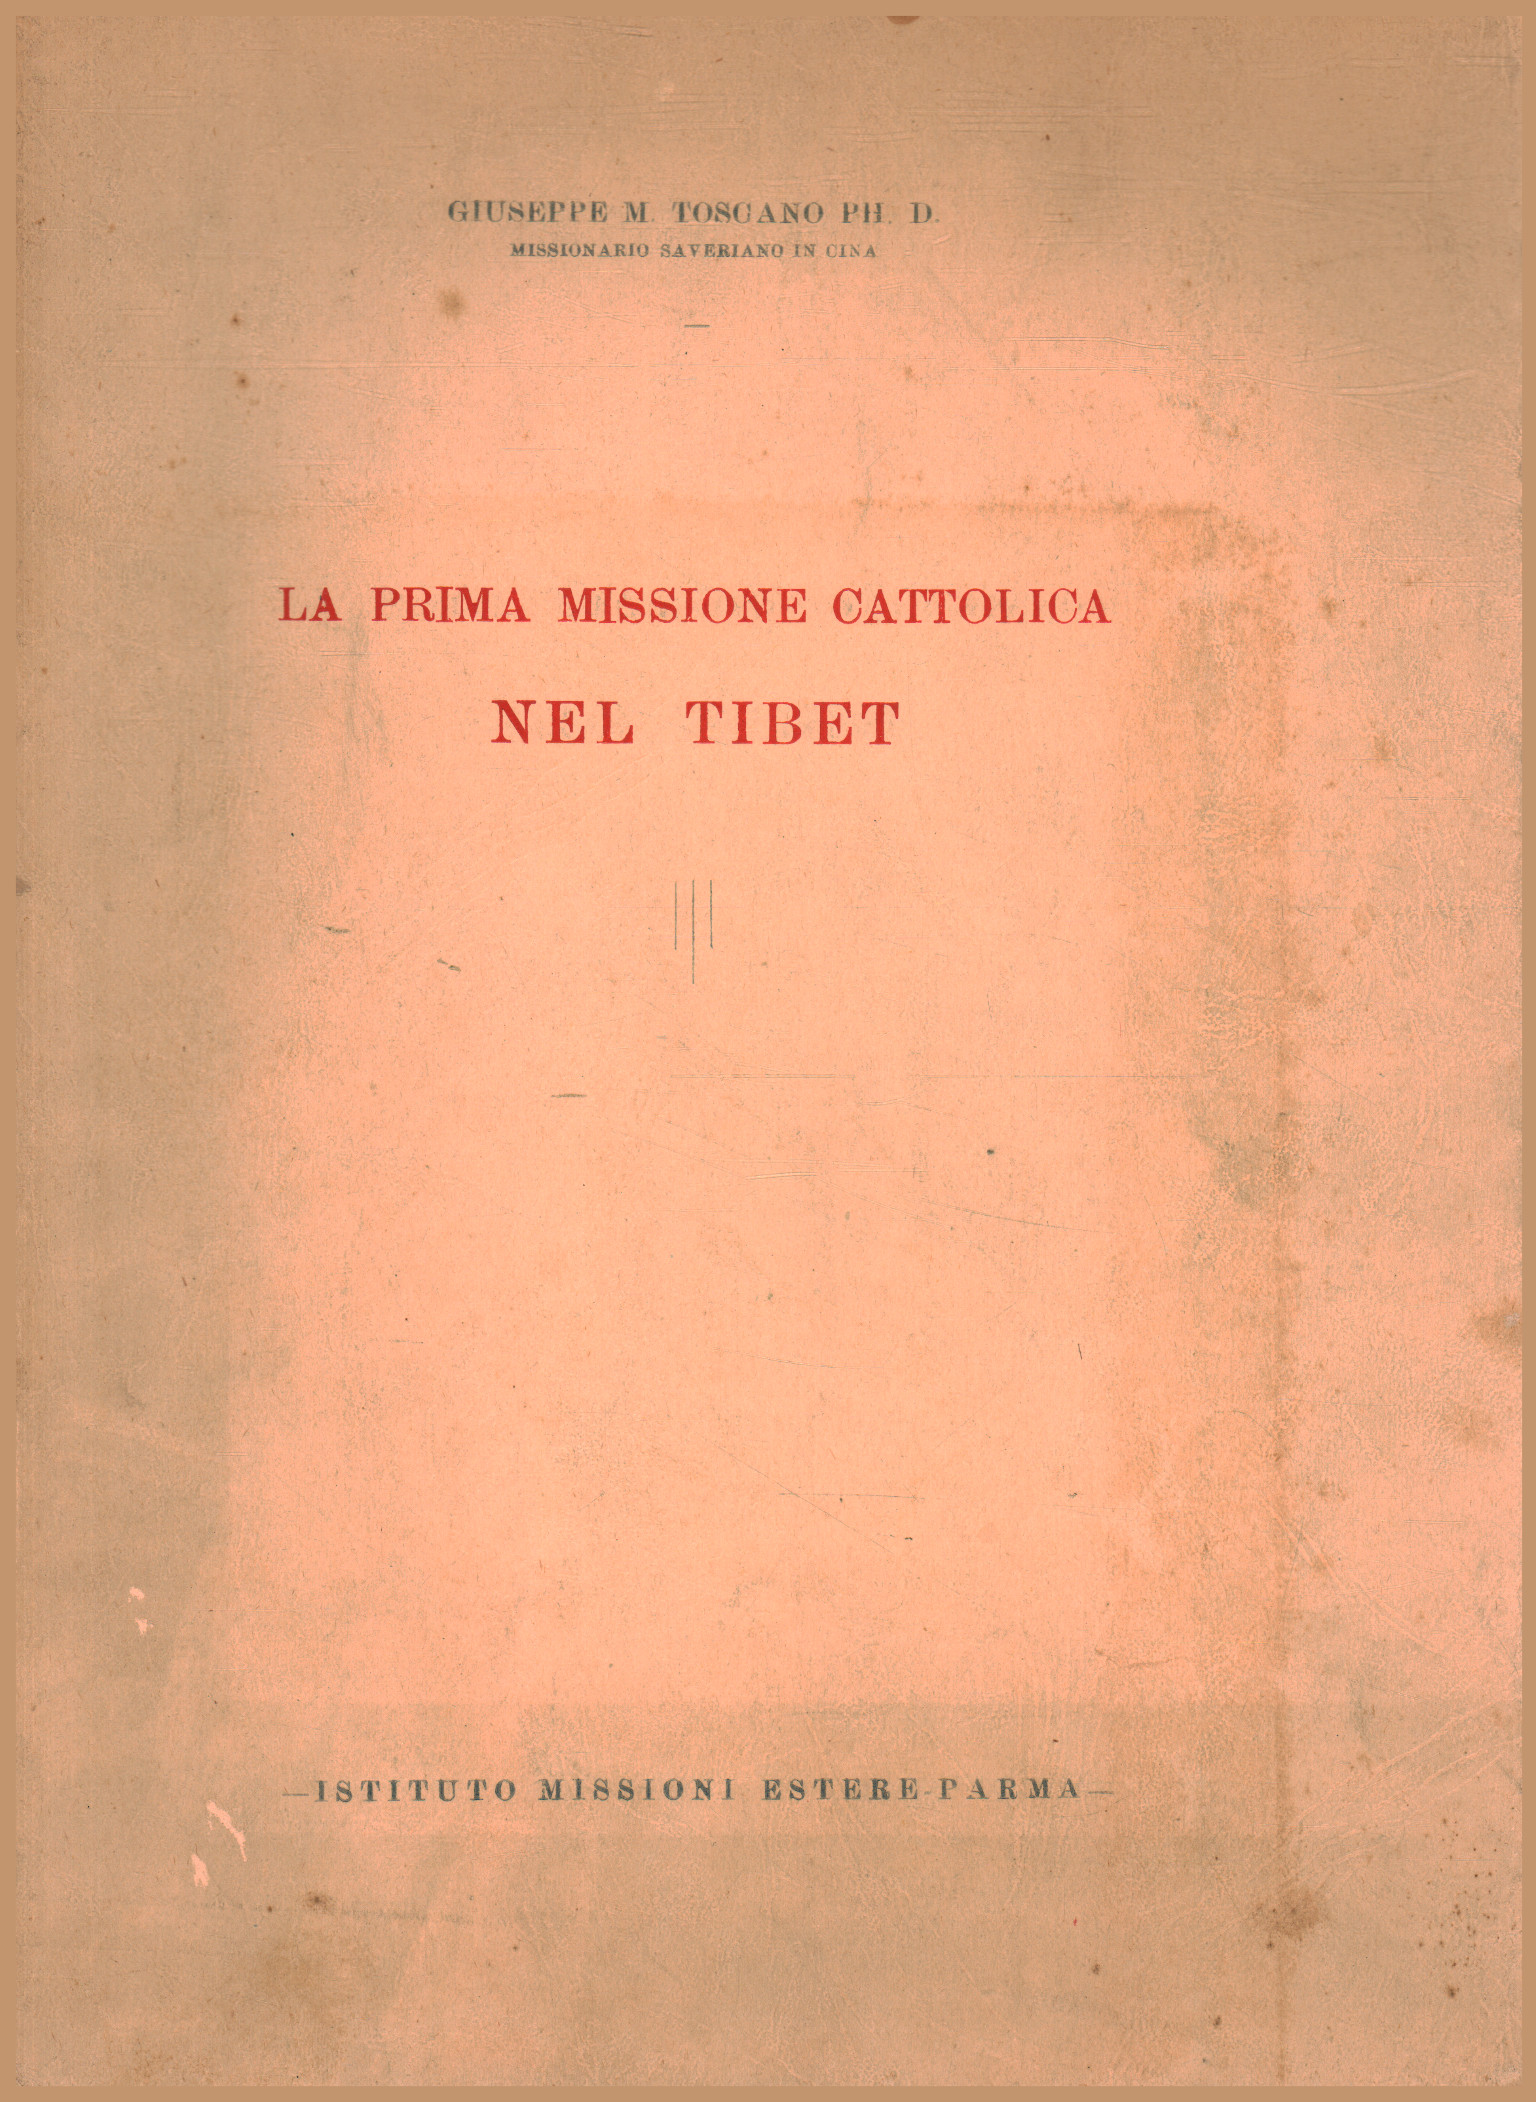 La prima missione cattolica nel Tibet, Giuseppe M. Toscano